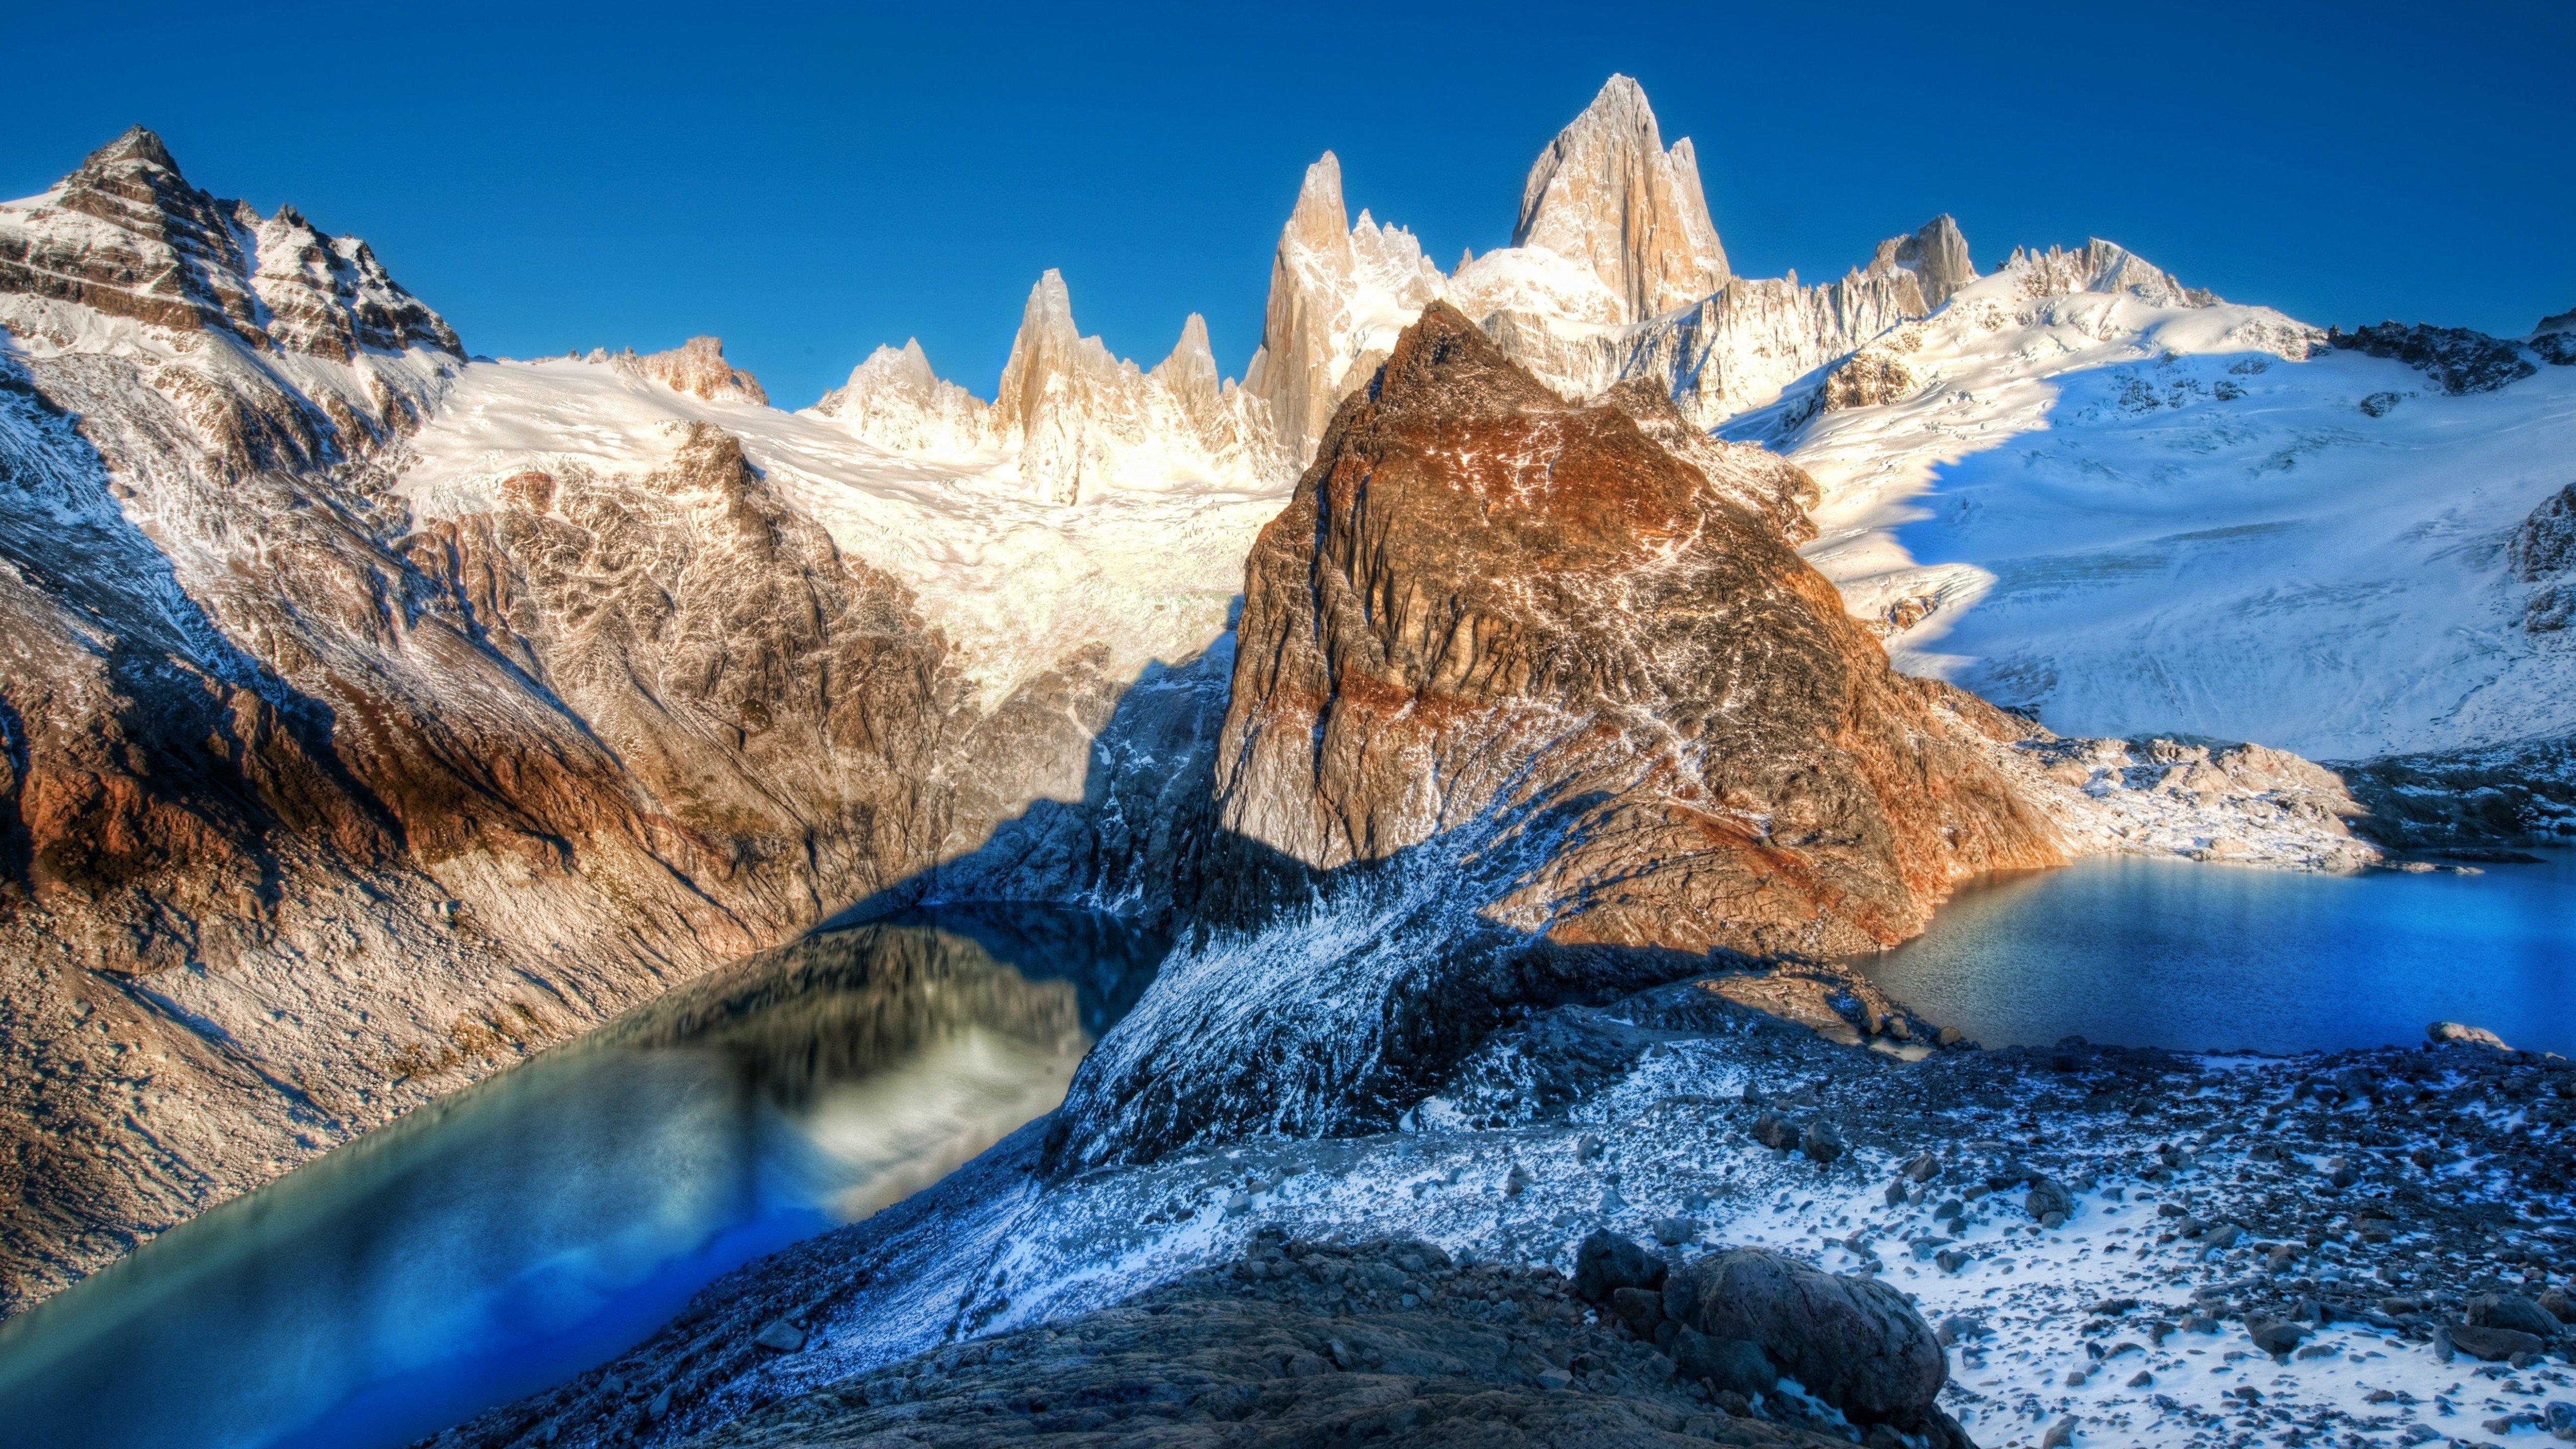 Fondos de pantalla Cordillera de los Andes en Argentina